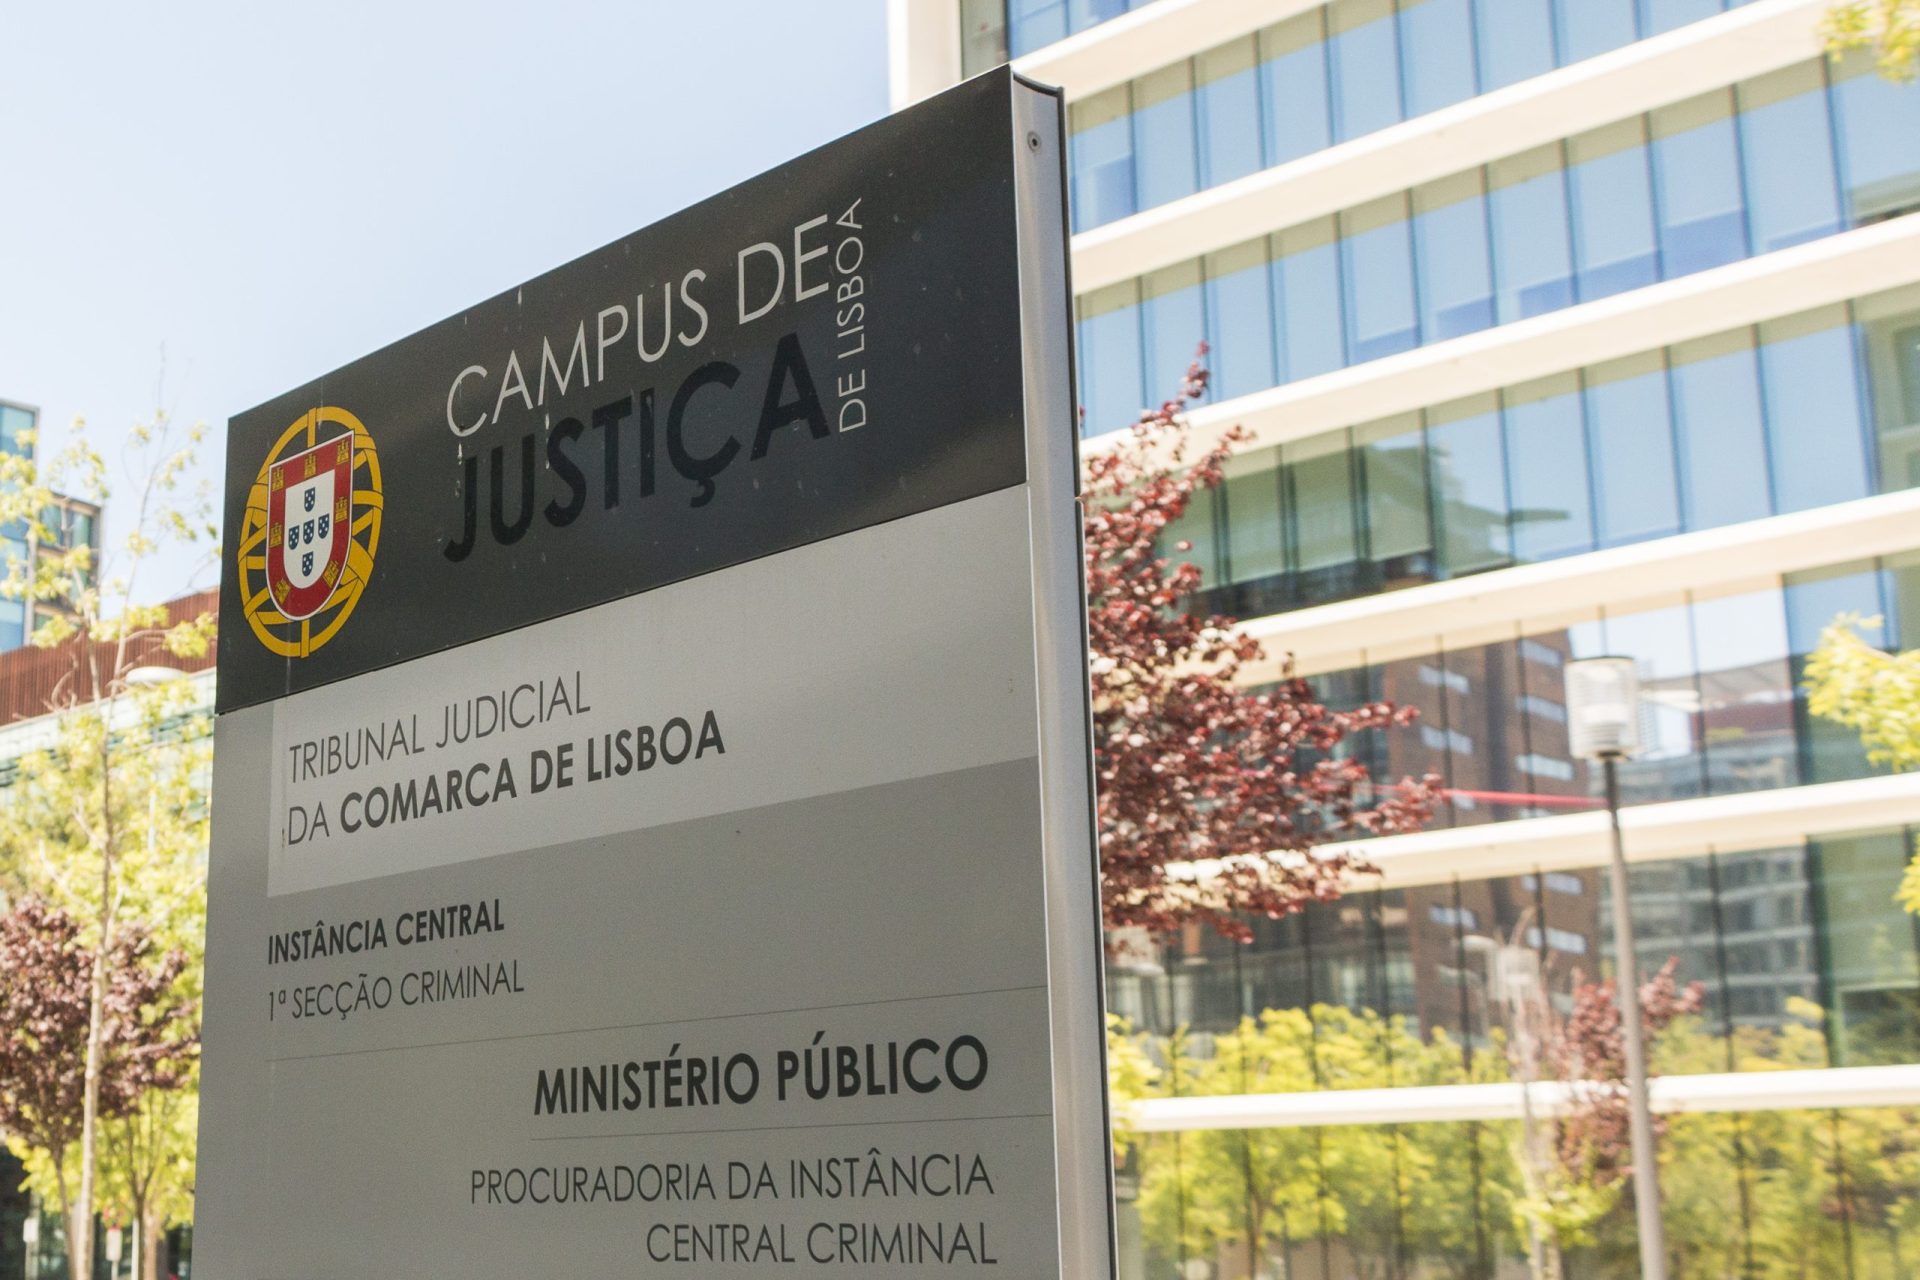 PSP intervém em confrontos entre adeptos do Benfica e do Sporting no Campus da Justiça